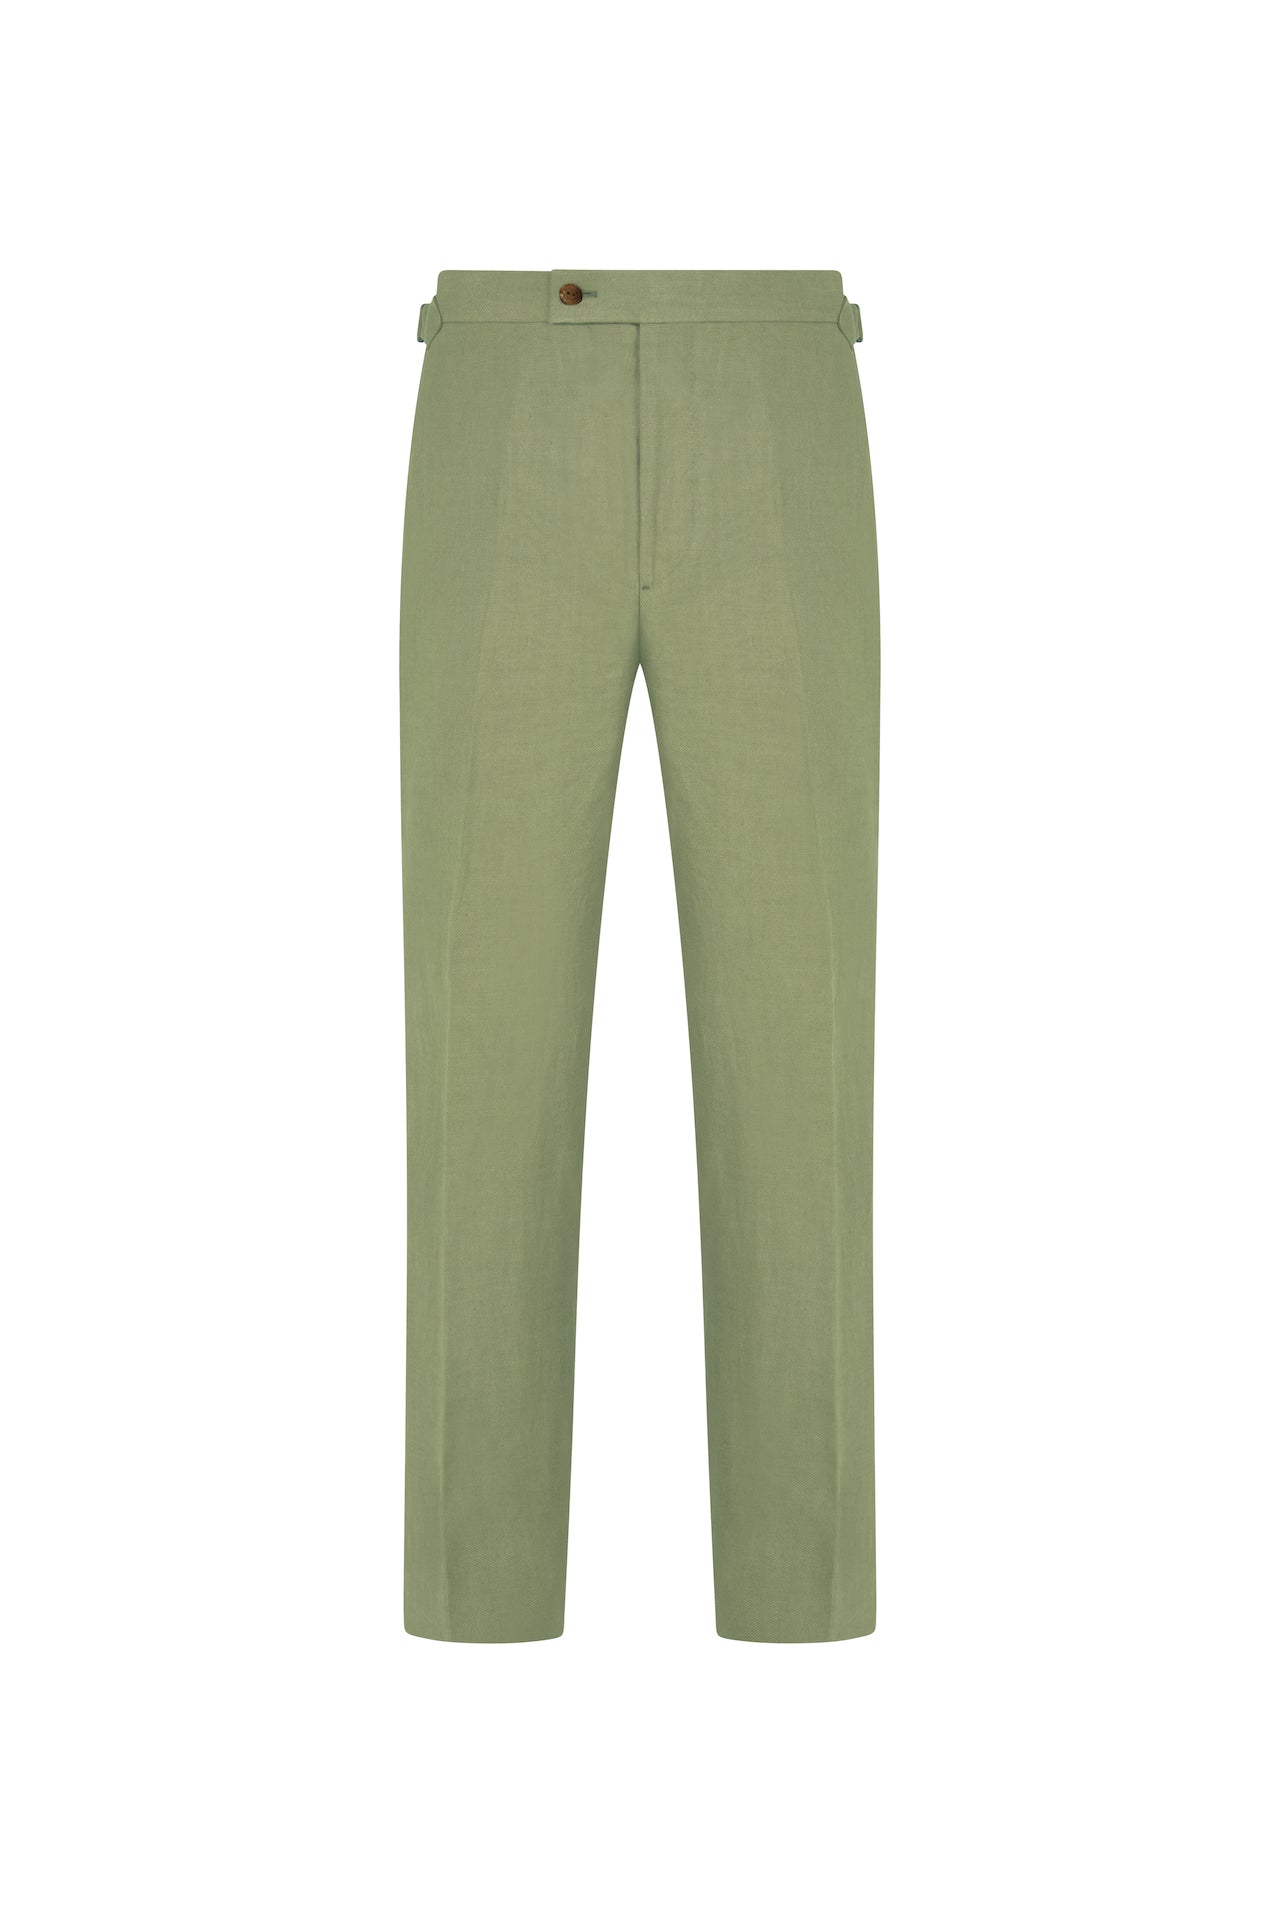 Sea Green Linen Trousers